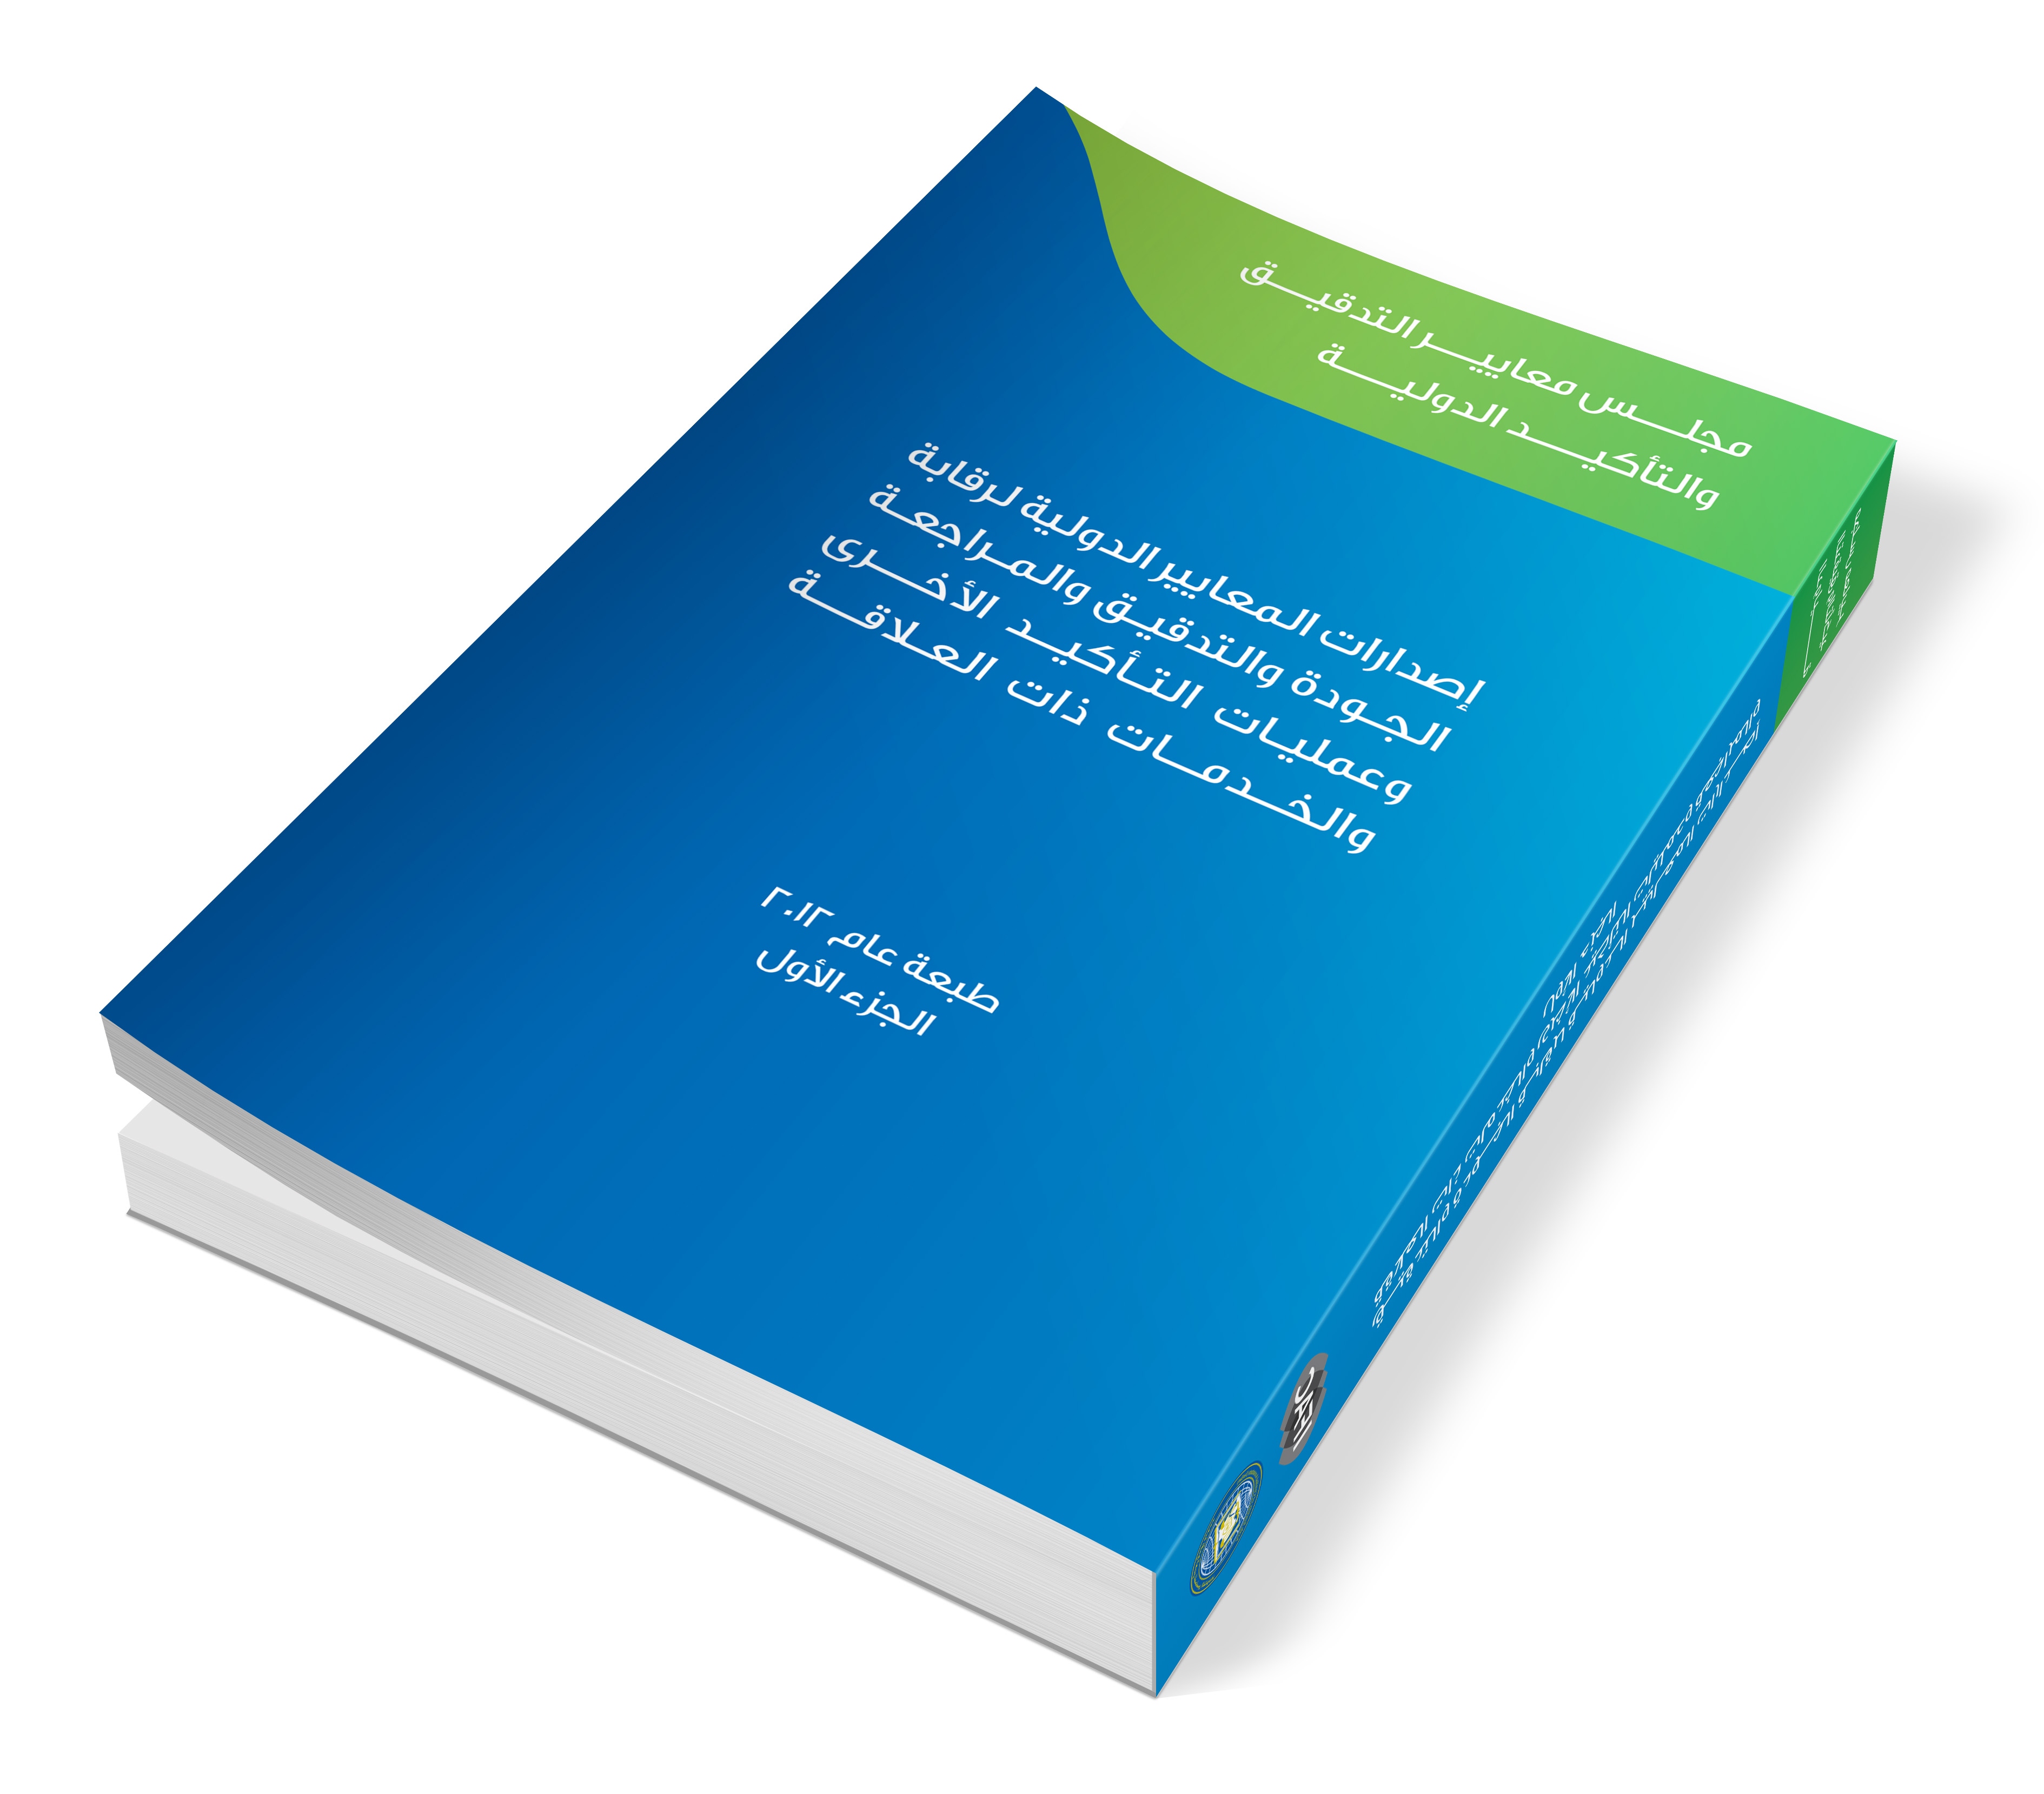 المعايير الدولية لرقابة الجودة والتدقيق والمراجعة وعمليات التأكيد الأخرى والخدمات ذات العلاقة 2012